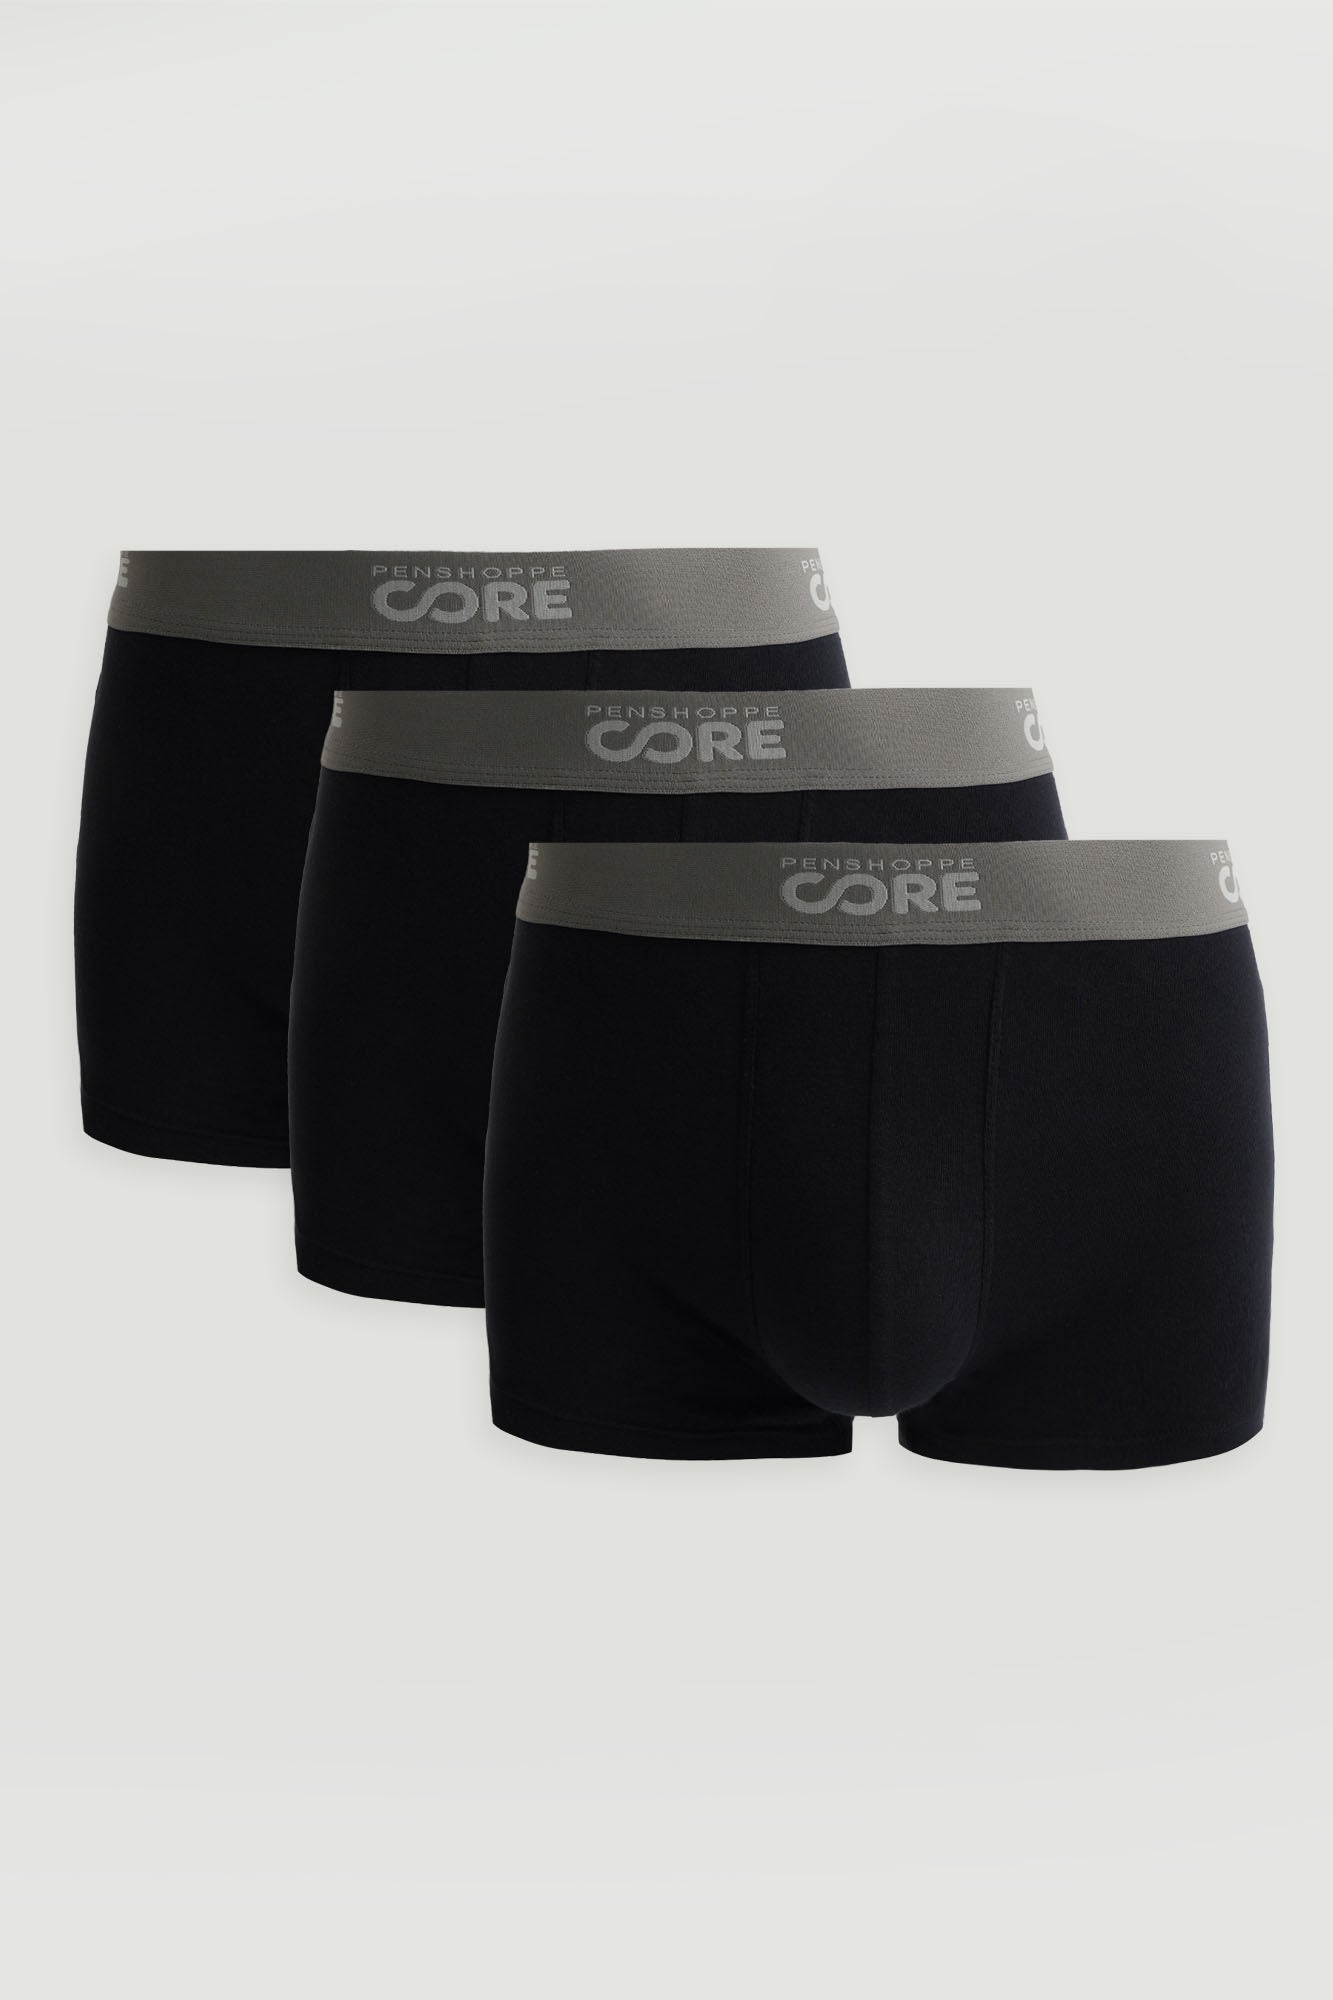 Penshoppe Core Men's 3 in 1 Bundle Boxer Briefs